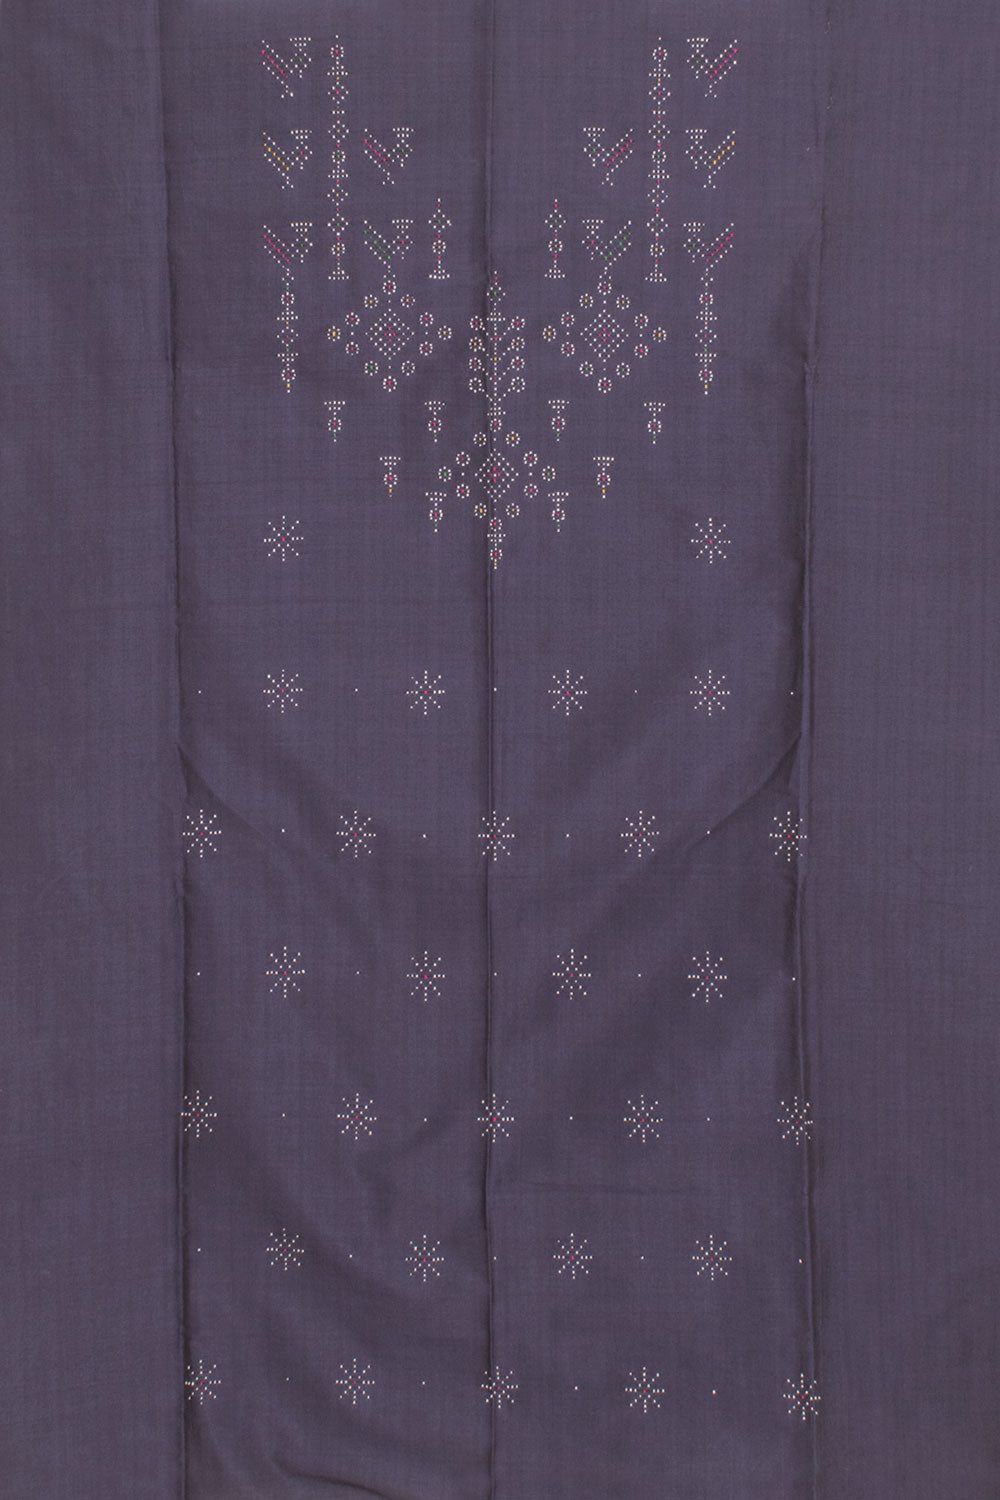 Tangaliya Cotton 2-Piece Salwar Suit Material 10058605